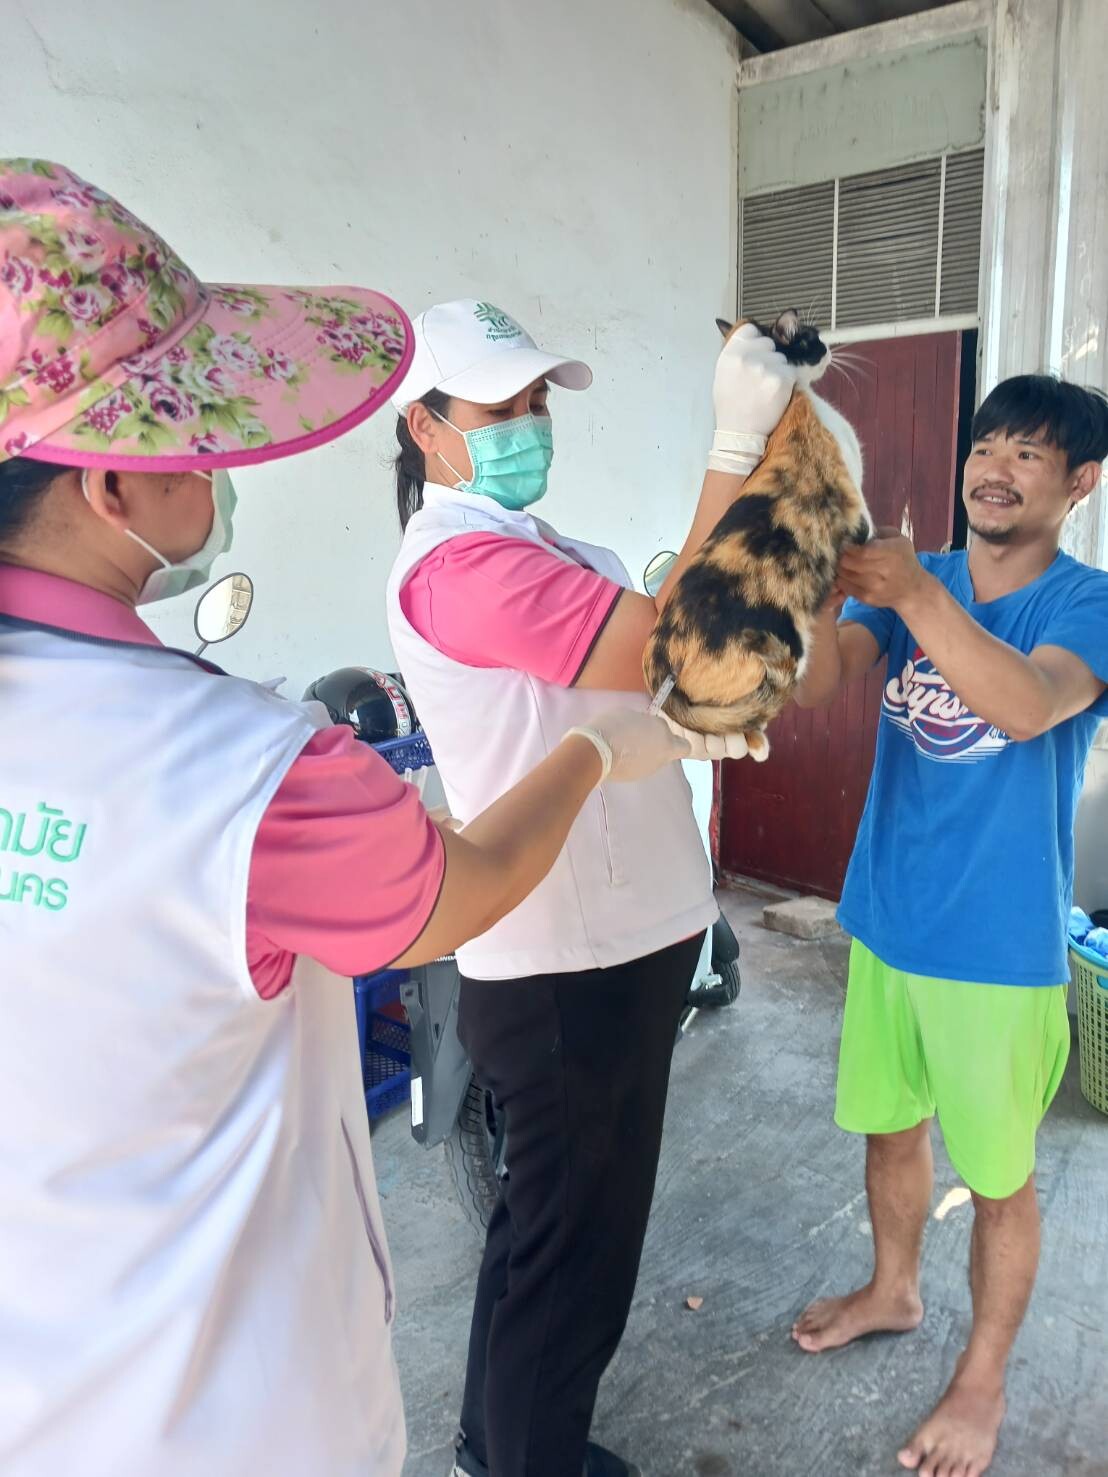 เขตลาดกระบังเร่งสอบสวนโรคพิษสุนัขบ้า - จัดหน่วยเคลื่อนที่ฉีดวัคซีนป้องกันในชุมชนนำไกร